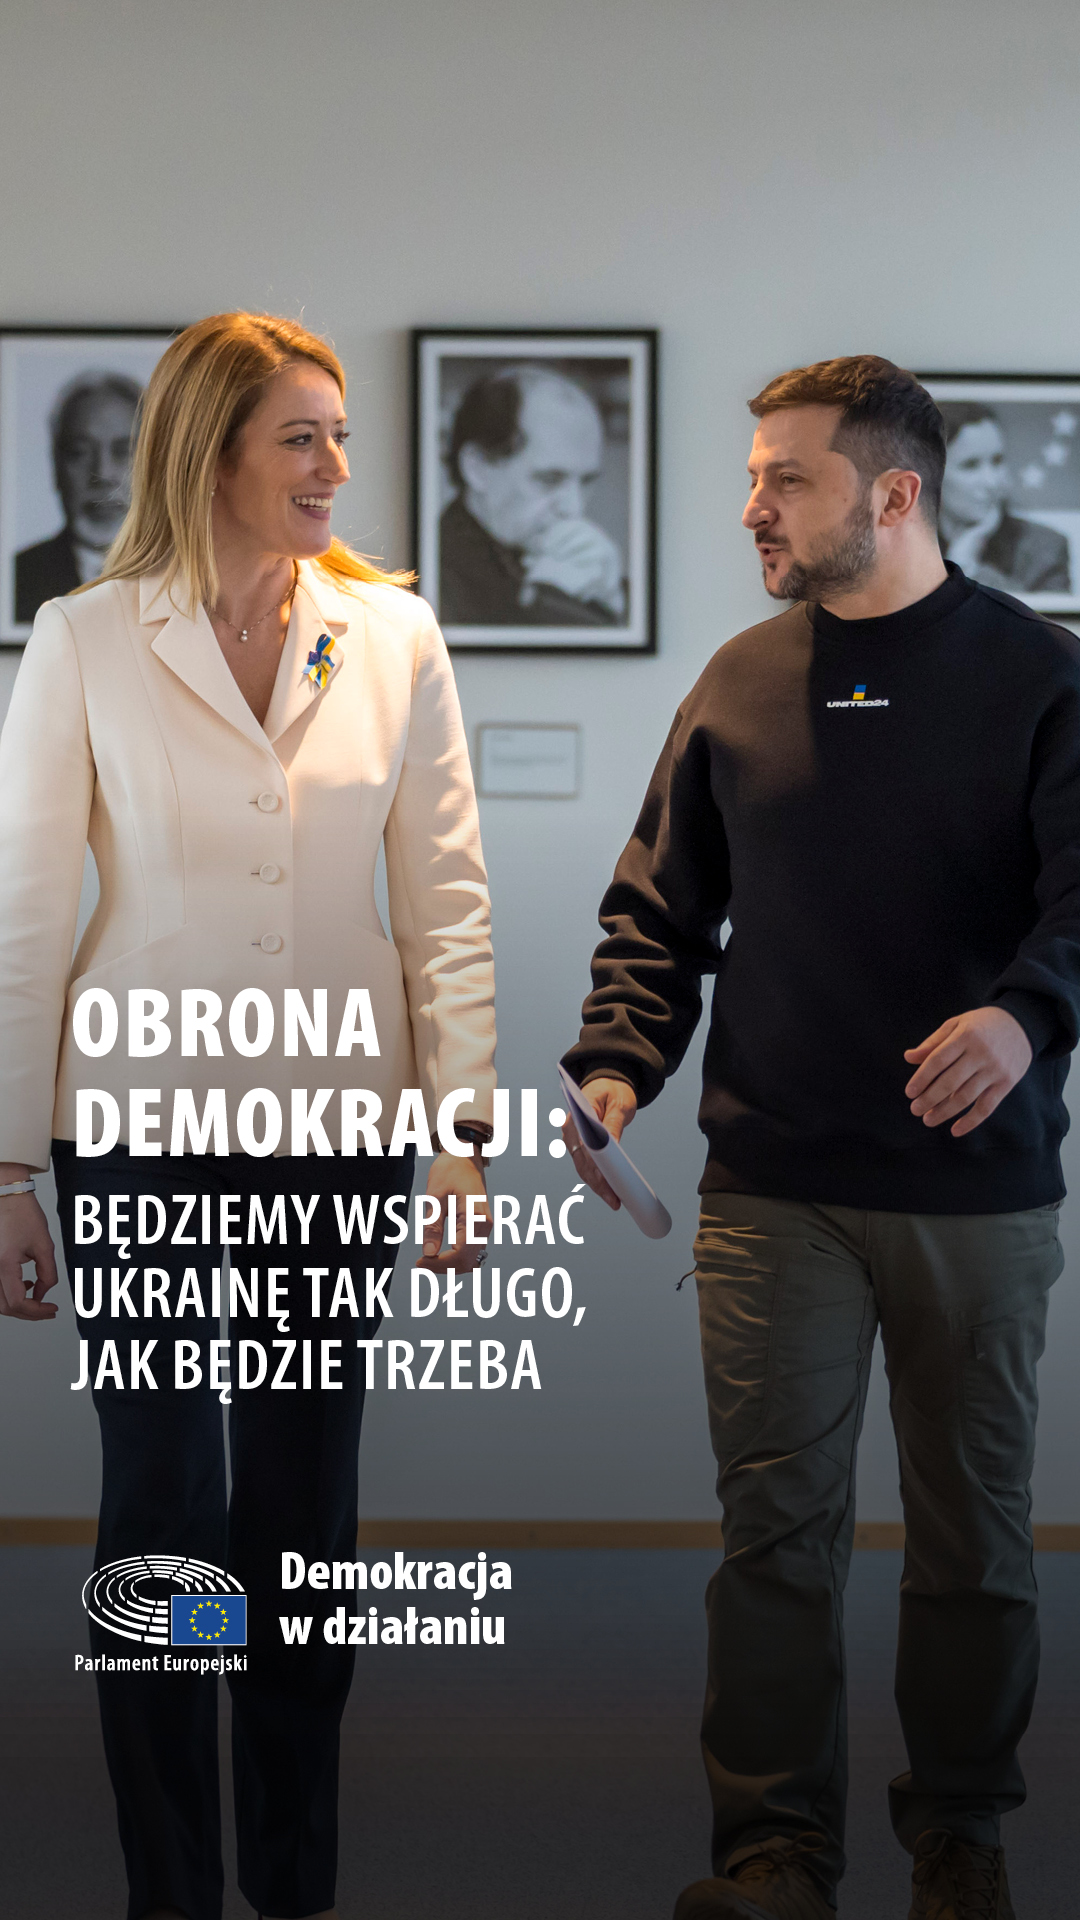 Defending Democracy: Ukraine 2 - Story